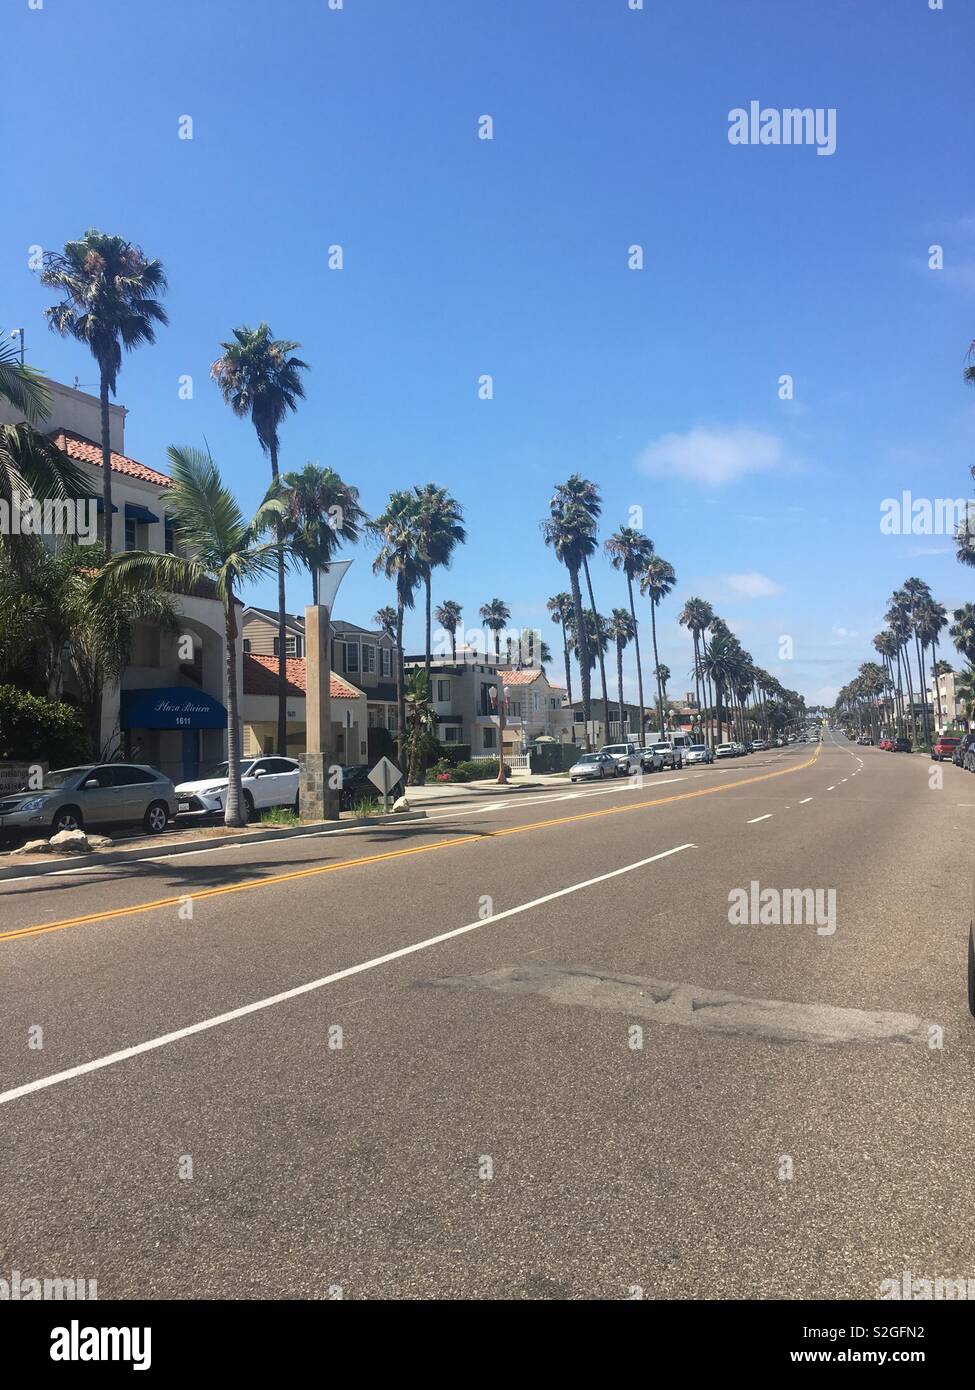 Hermosa Beach, le quartier lors d'une journée ensoleillée Banque D'Images